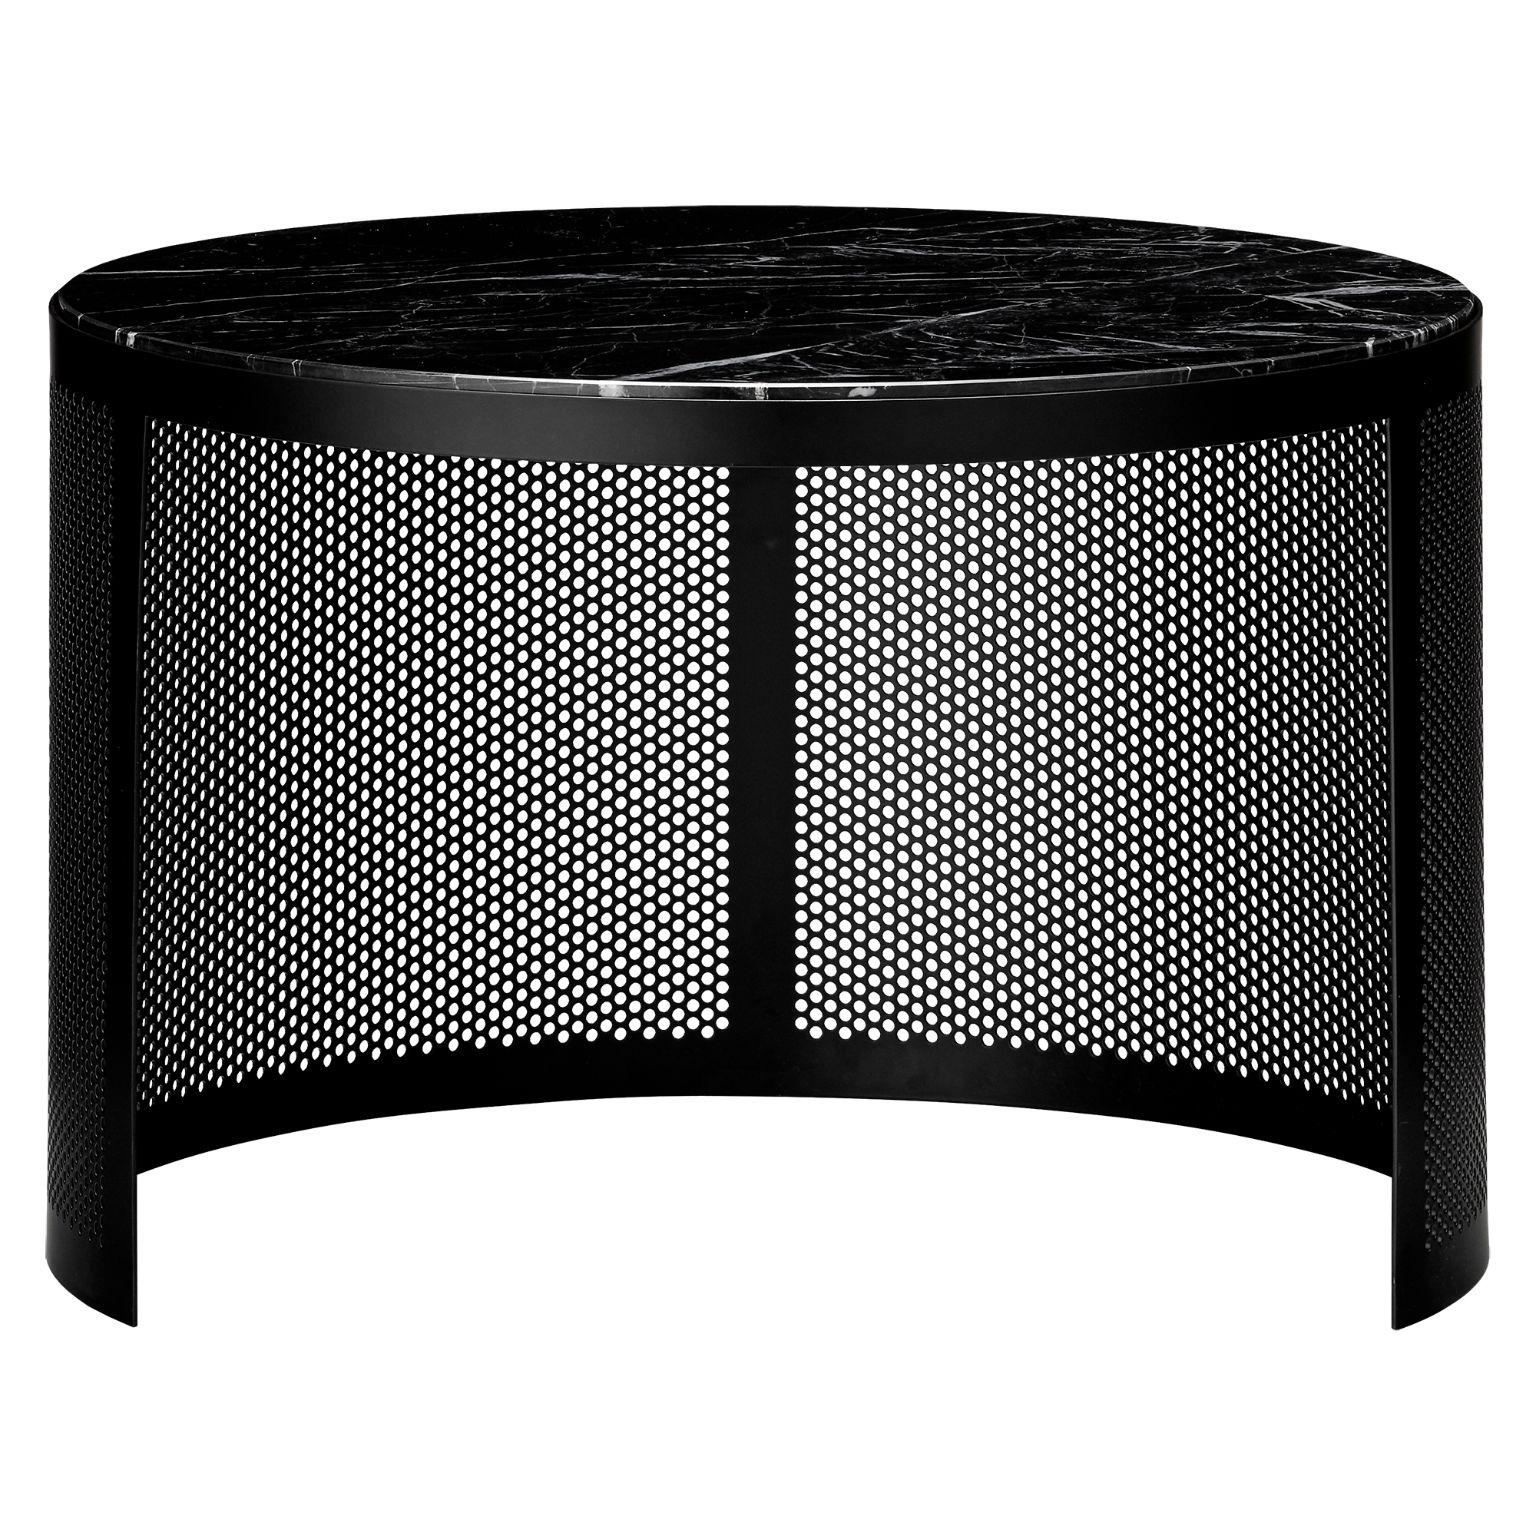 Zeitgenössischer kleiner Beistelltisch aus Marmor und Stahl
Abmessungen: Ø 46 x H 30,2 cm
MATERIALIEN: Marmor und Stahl

Diese Tische können in jedem Raum aufgestellt werden, in dem zusätzlicher kreativer Raum benötigt wird. Sie sind aus schwarzem